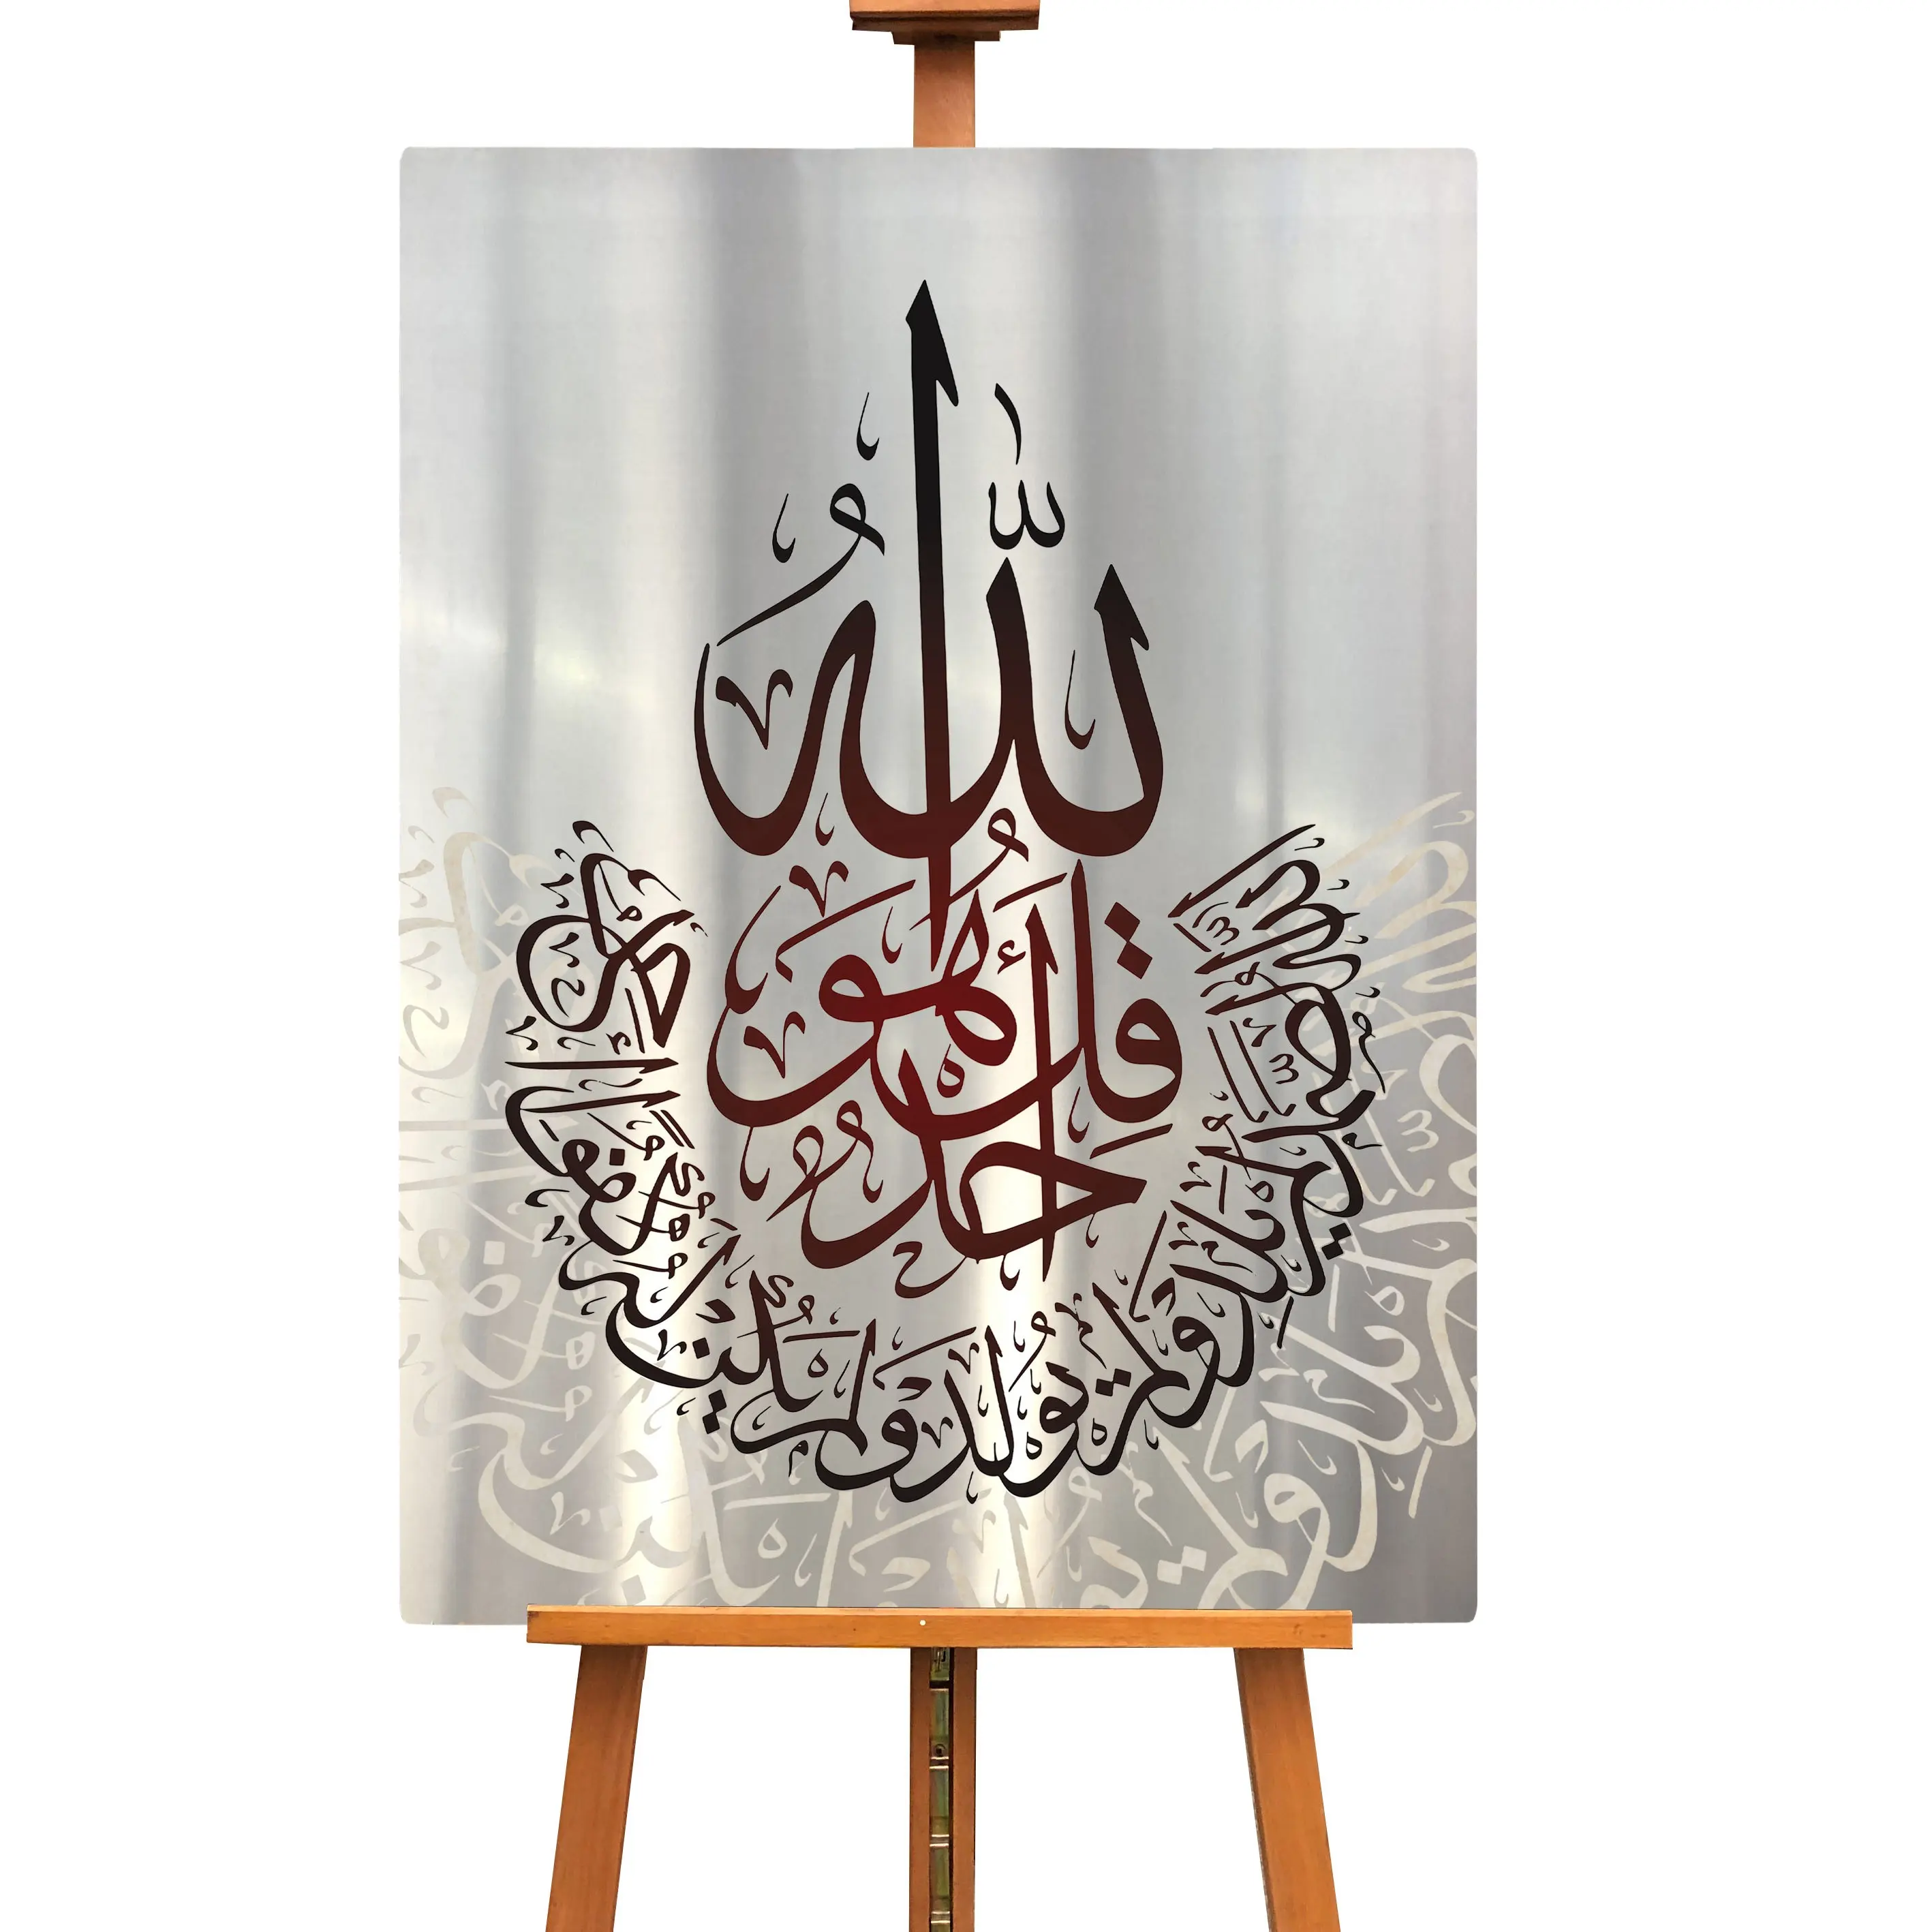 فن إسلامي حديث للخط الفني, فن طباعة معدني ، لغرف المعيشة ، ديكور منزلي ، لوحة عربية